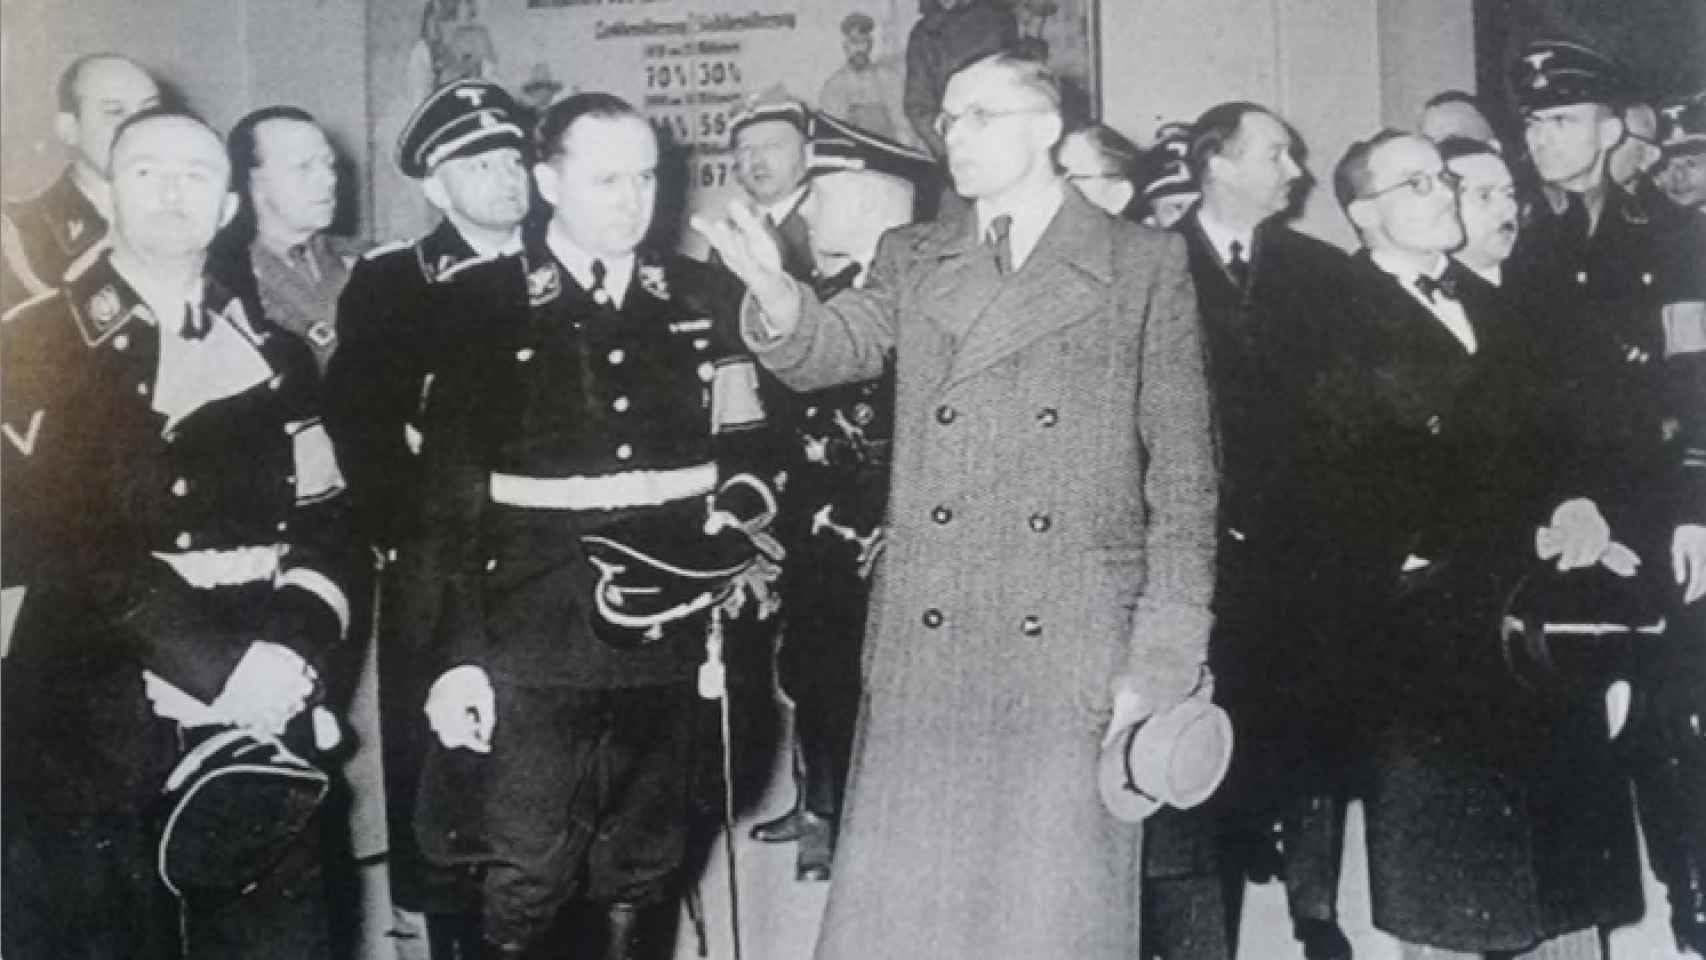 Richard Walther Darré (junto al hombre de civil) y Heinrich Himmler (a su izquierda).